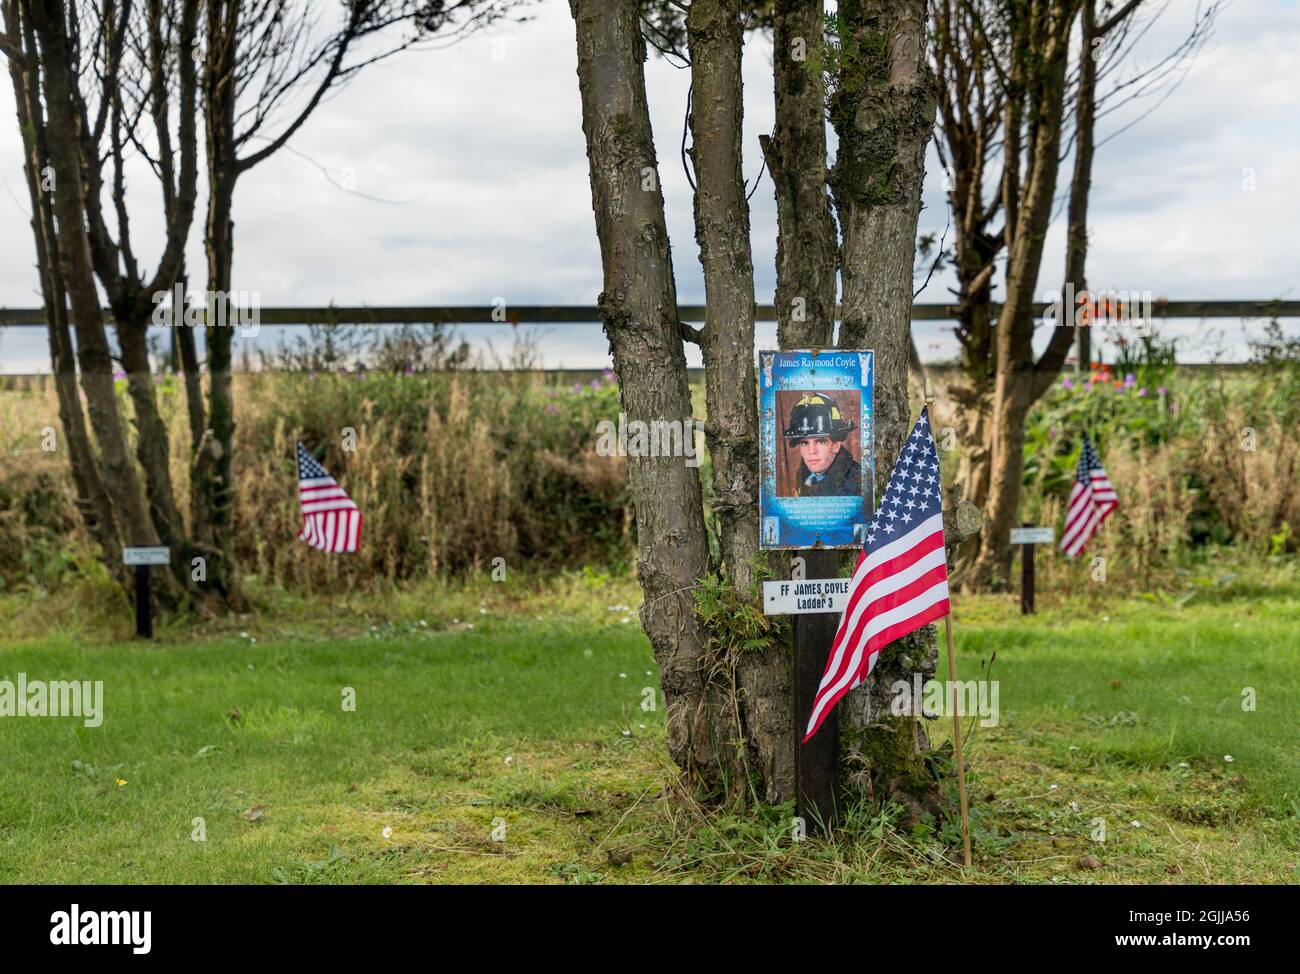 Ringfinnan, Kinsale, Cork, Irlanda. 10 settembre, 2021.una bandiera americana si trova accanto ad un albero che è stato piantato in memoria del pompiere James Coyle che ha sacrificato la sua vita per salvare gli altri durante l'attacco del 9/11. In tutti i 343 alberi sono stati piantati in memoria di tutti i vigili del fuoco che sono morti quel giorno al Giardino della memoria a Ringfinnan, Kinsale, Co. Cork, Irlanda - Foto; David Creedon / Alamy Live News Foto Stock